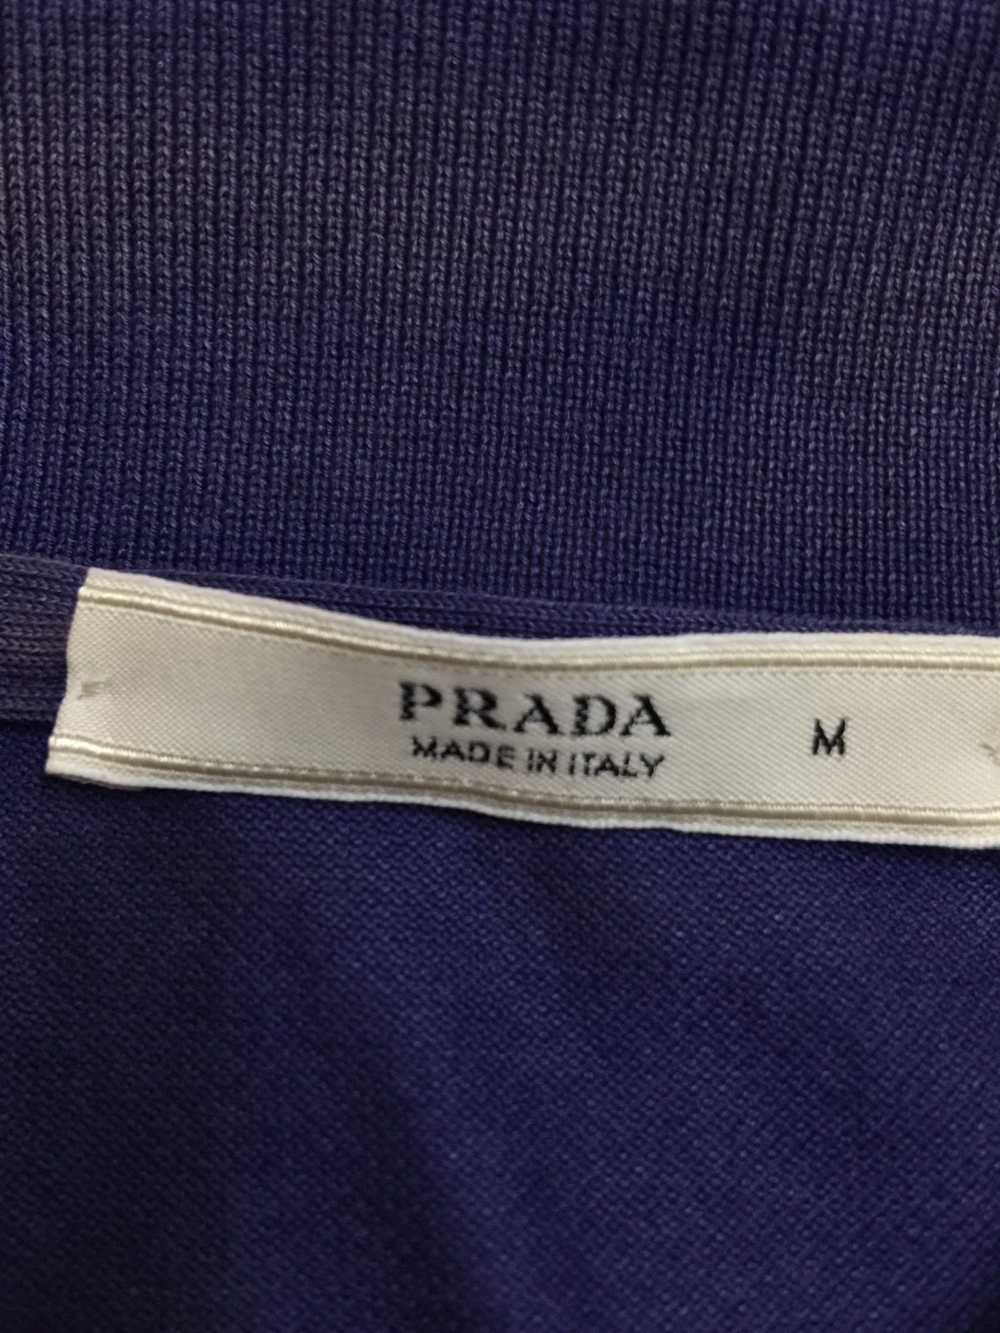 Prada Prada Polo Shirt - image 5